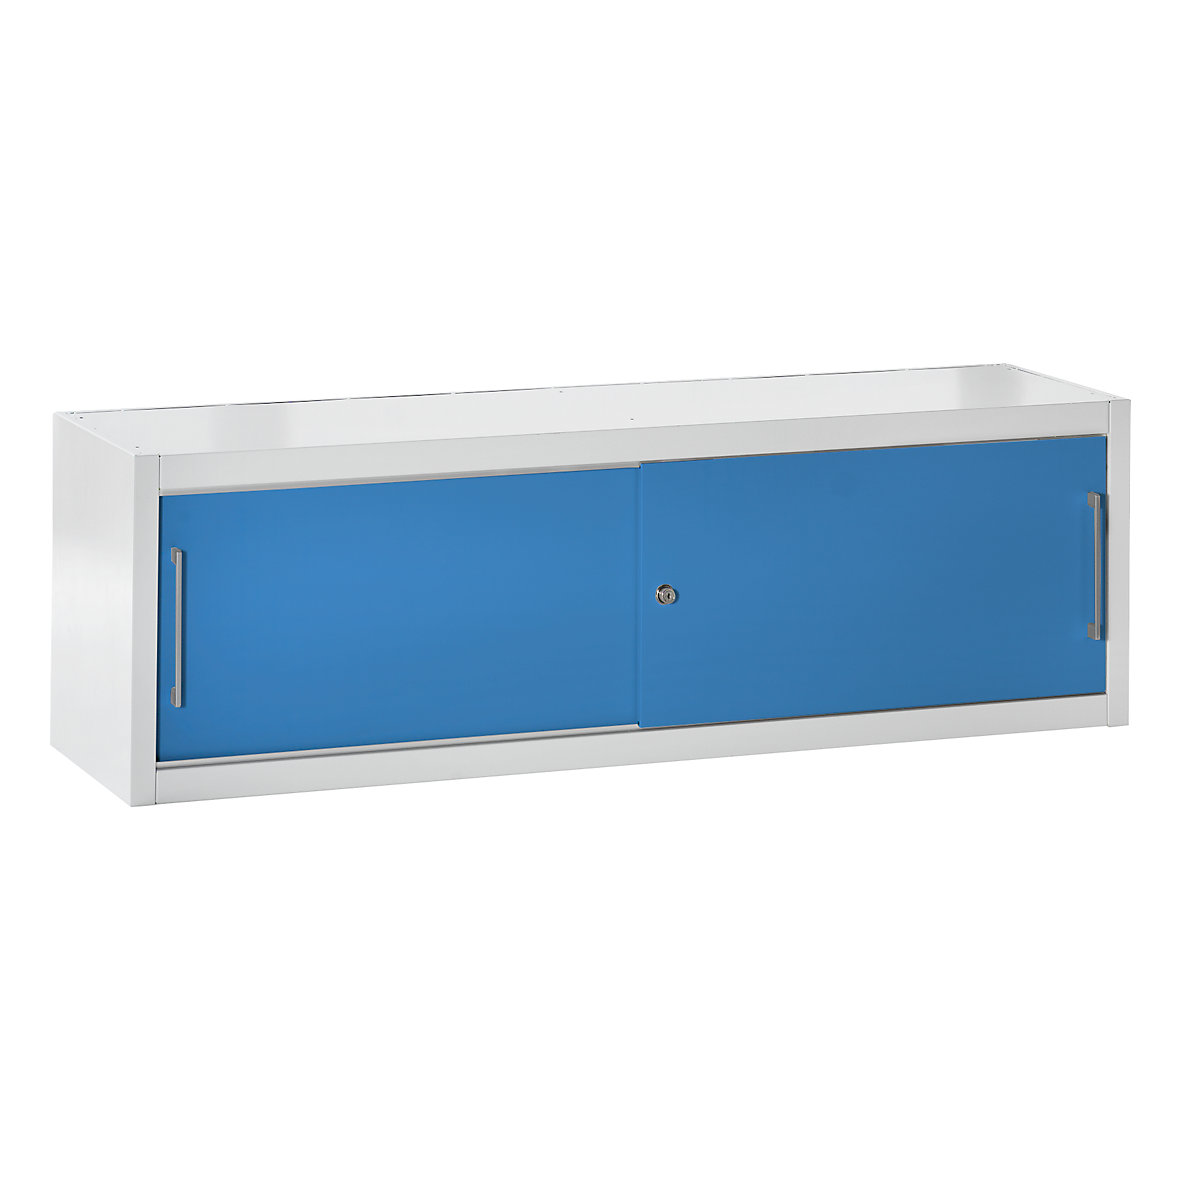 mauser – Armoire à portes coulissantes, comme rehausse pour largeur 1600 mm, h x l x p 500 x 1600 x 500 mm, gris clair / bleu clair